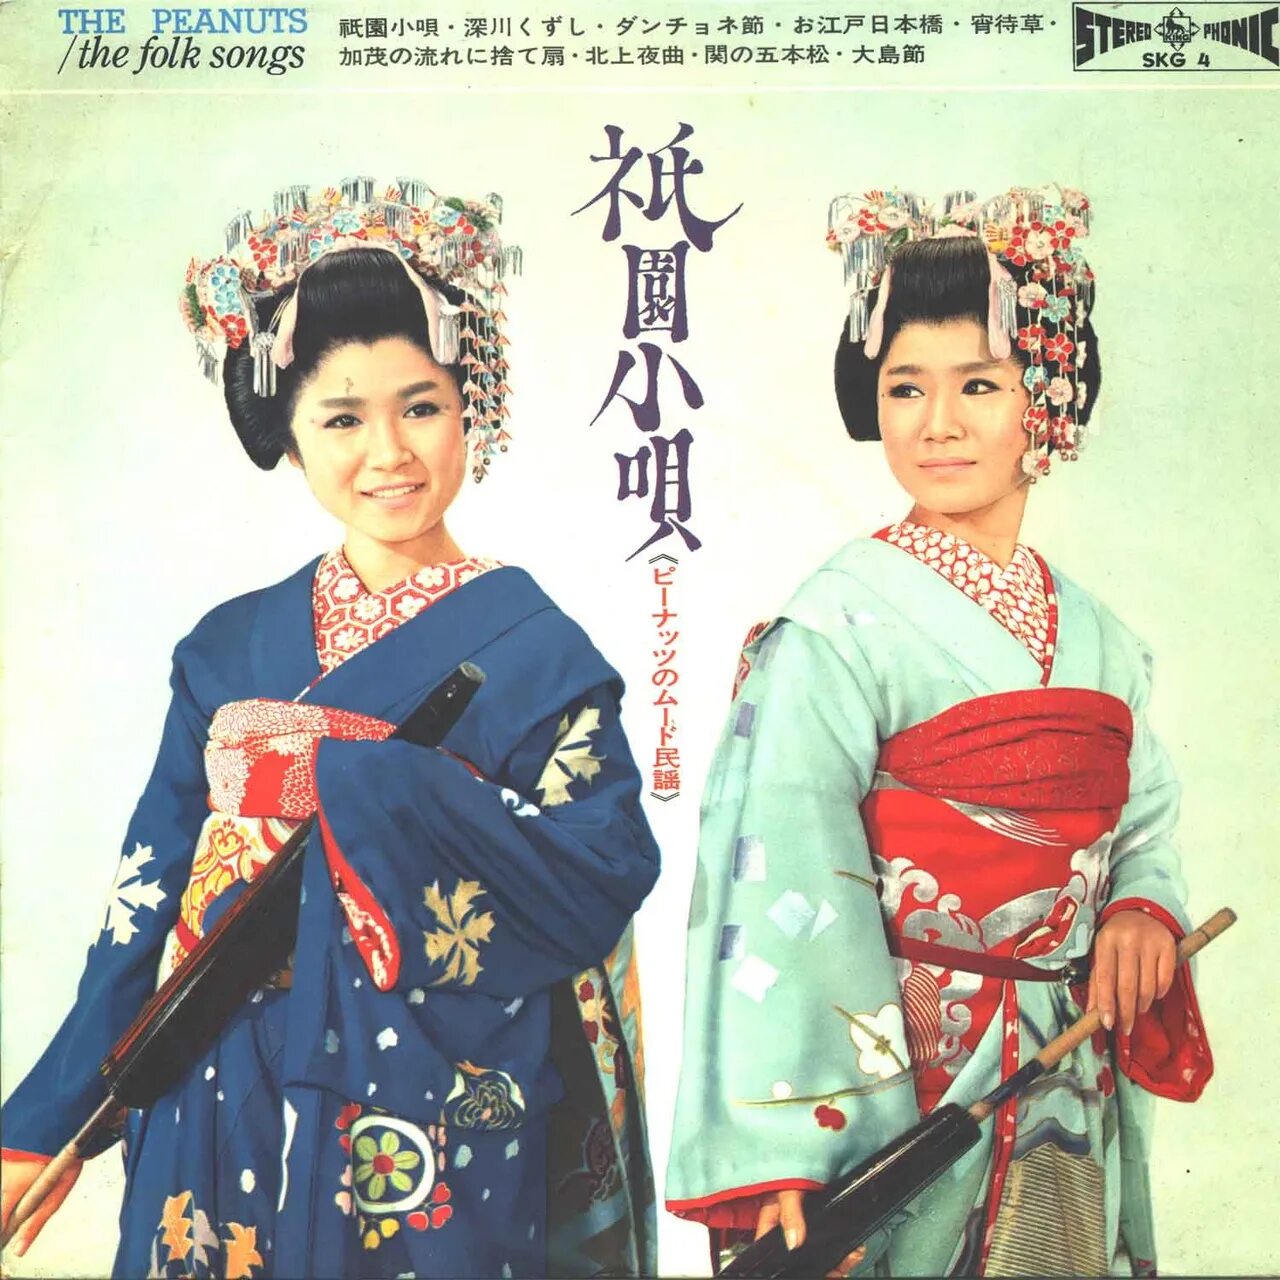 Песня японские каникулы. Сёстры Пинац. Японский дуэт сестры Пинац. Сёстры дза Пинац. Каникулы любви / Koi-no Bakansu - the Peanuts 1963.